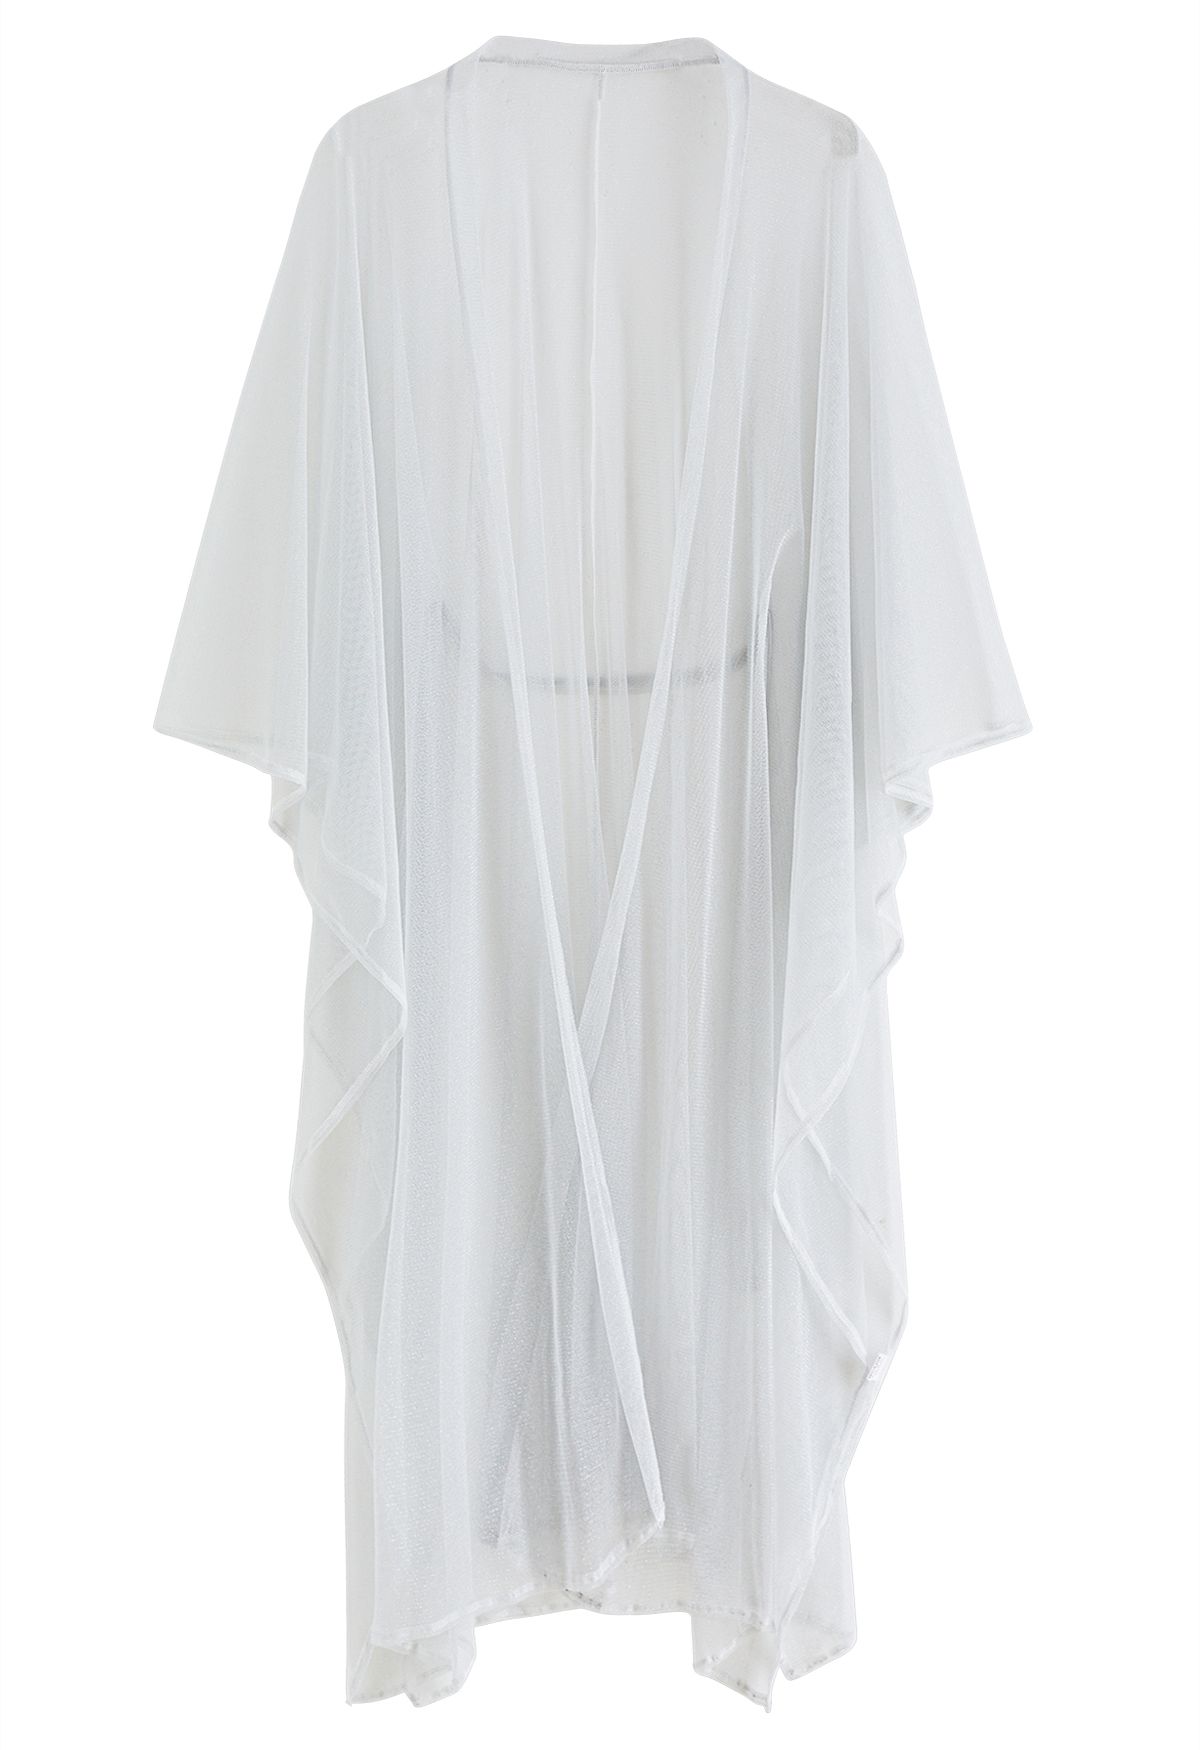 Shimmer Tulle Flare Kimono in White - Retro, Indie and Unique Fashion